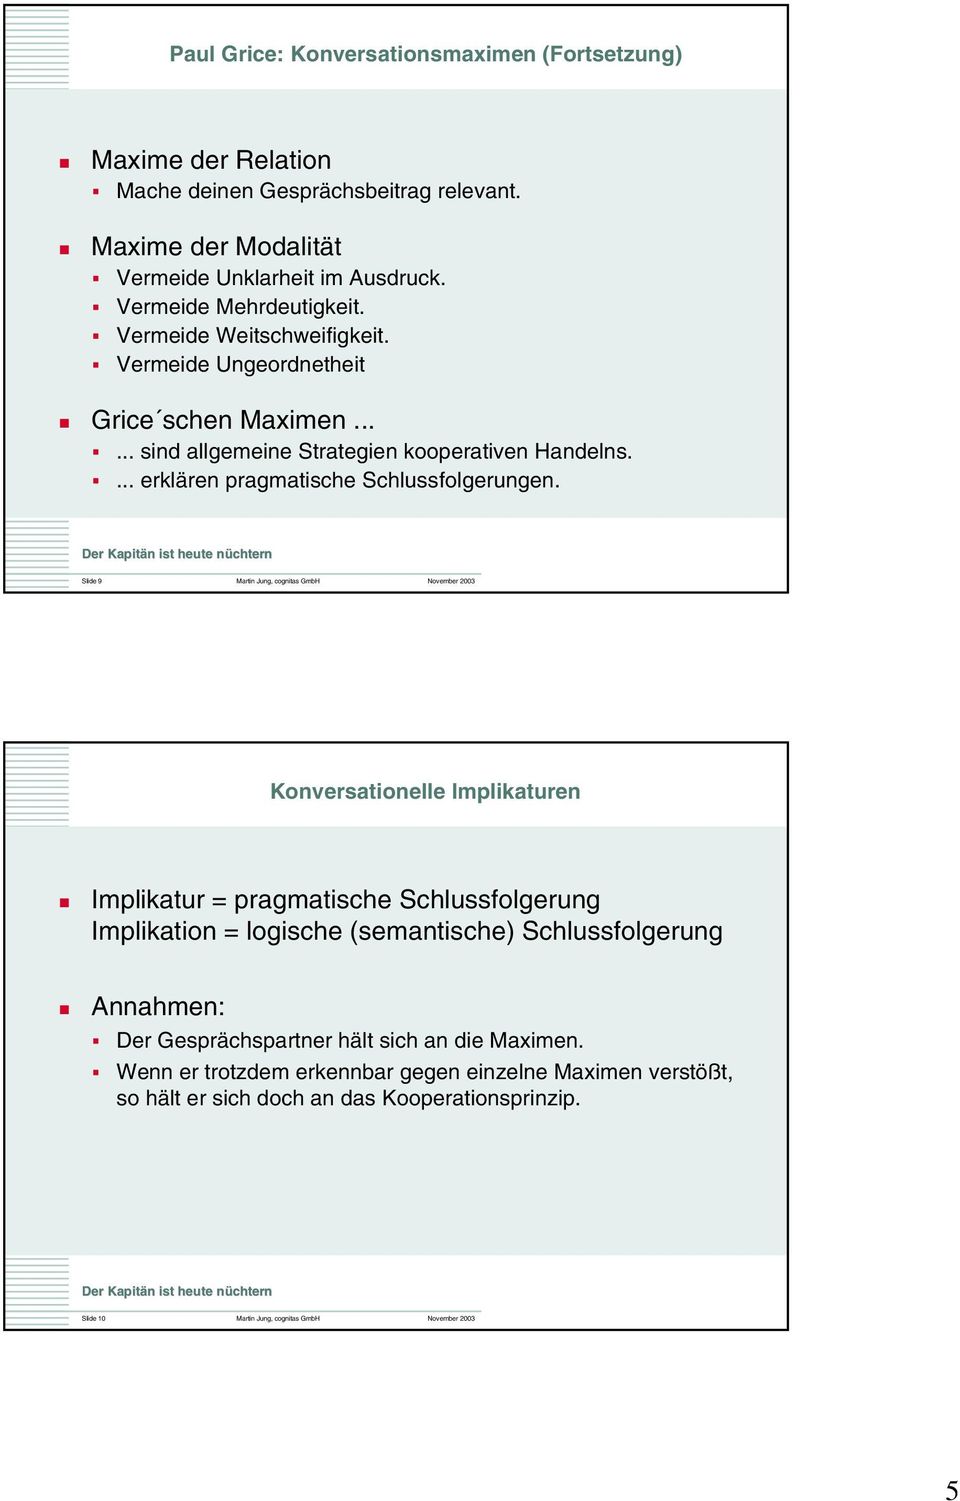 Slide 9 Martin Jung, cognitas GmbH November 2003 Konversationelle Implikaturen Implikatur = pragmatische Schlussfolgerung Implikation = logische (semantische) Schlussfolgerung Annahmen: